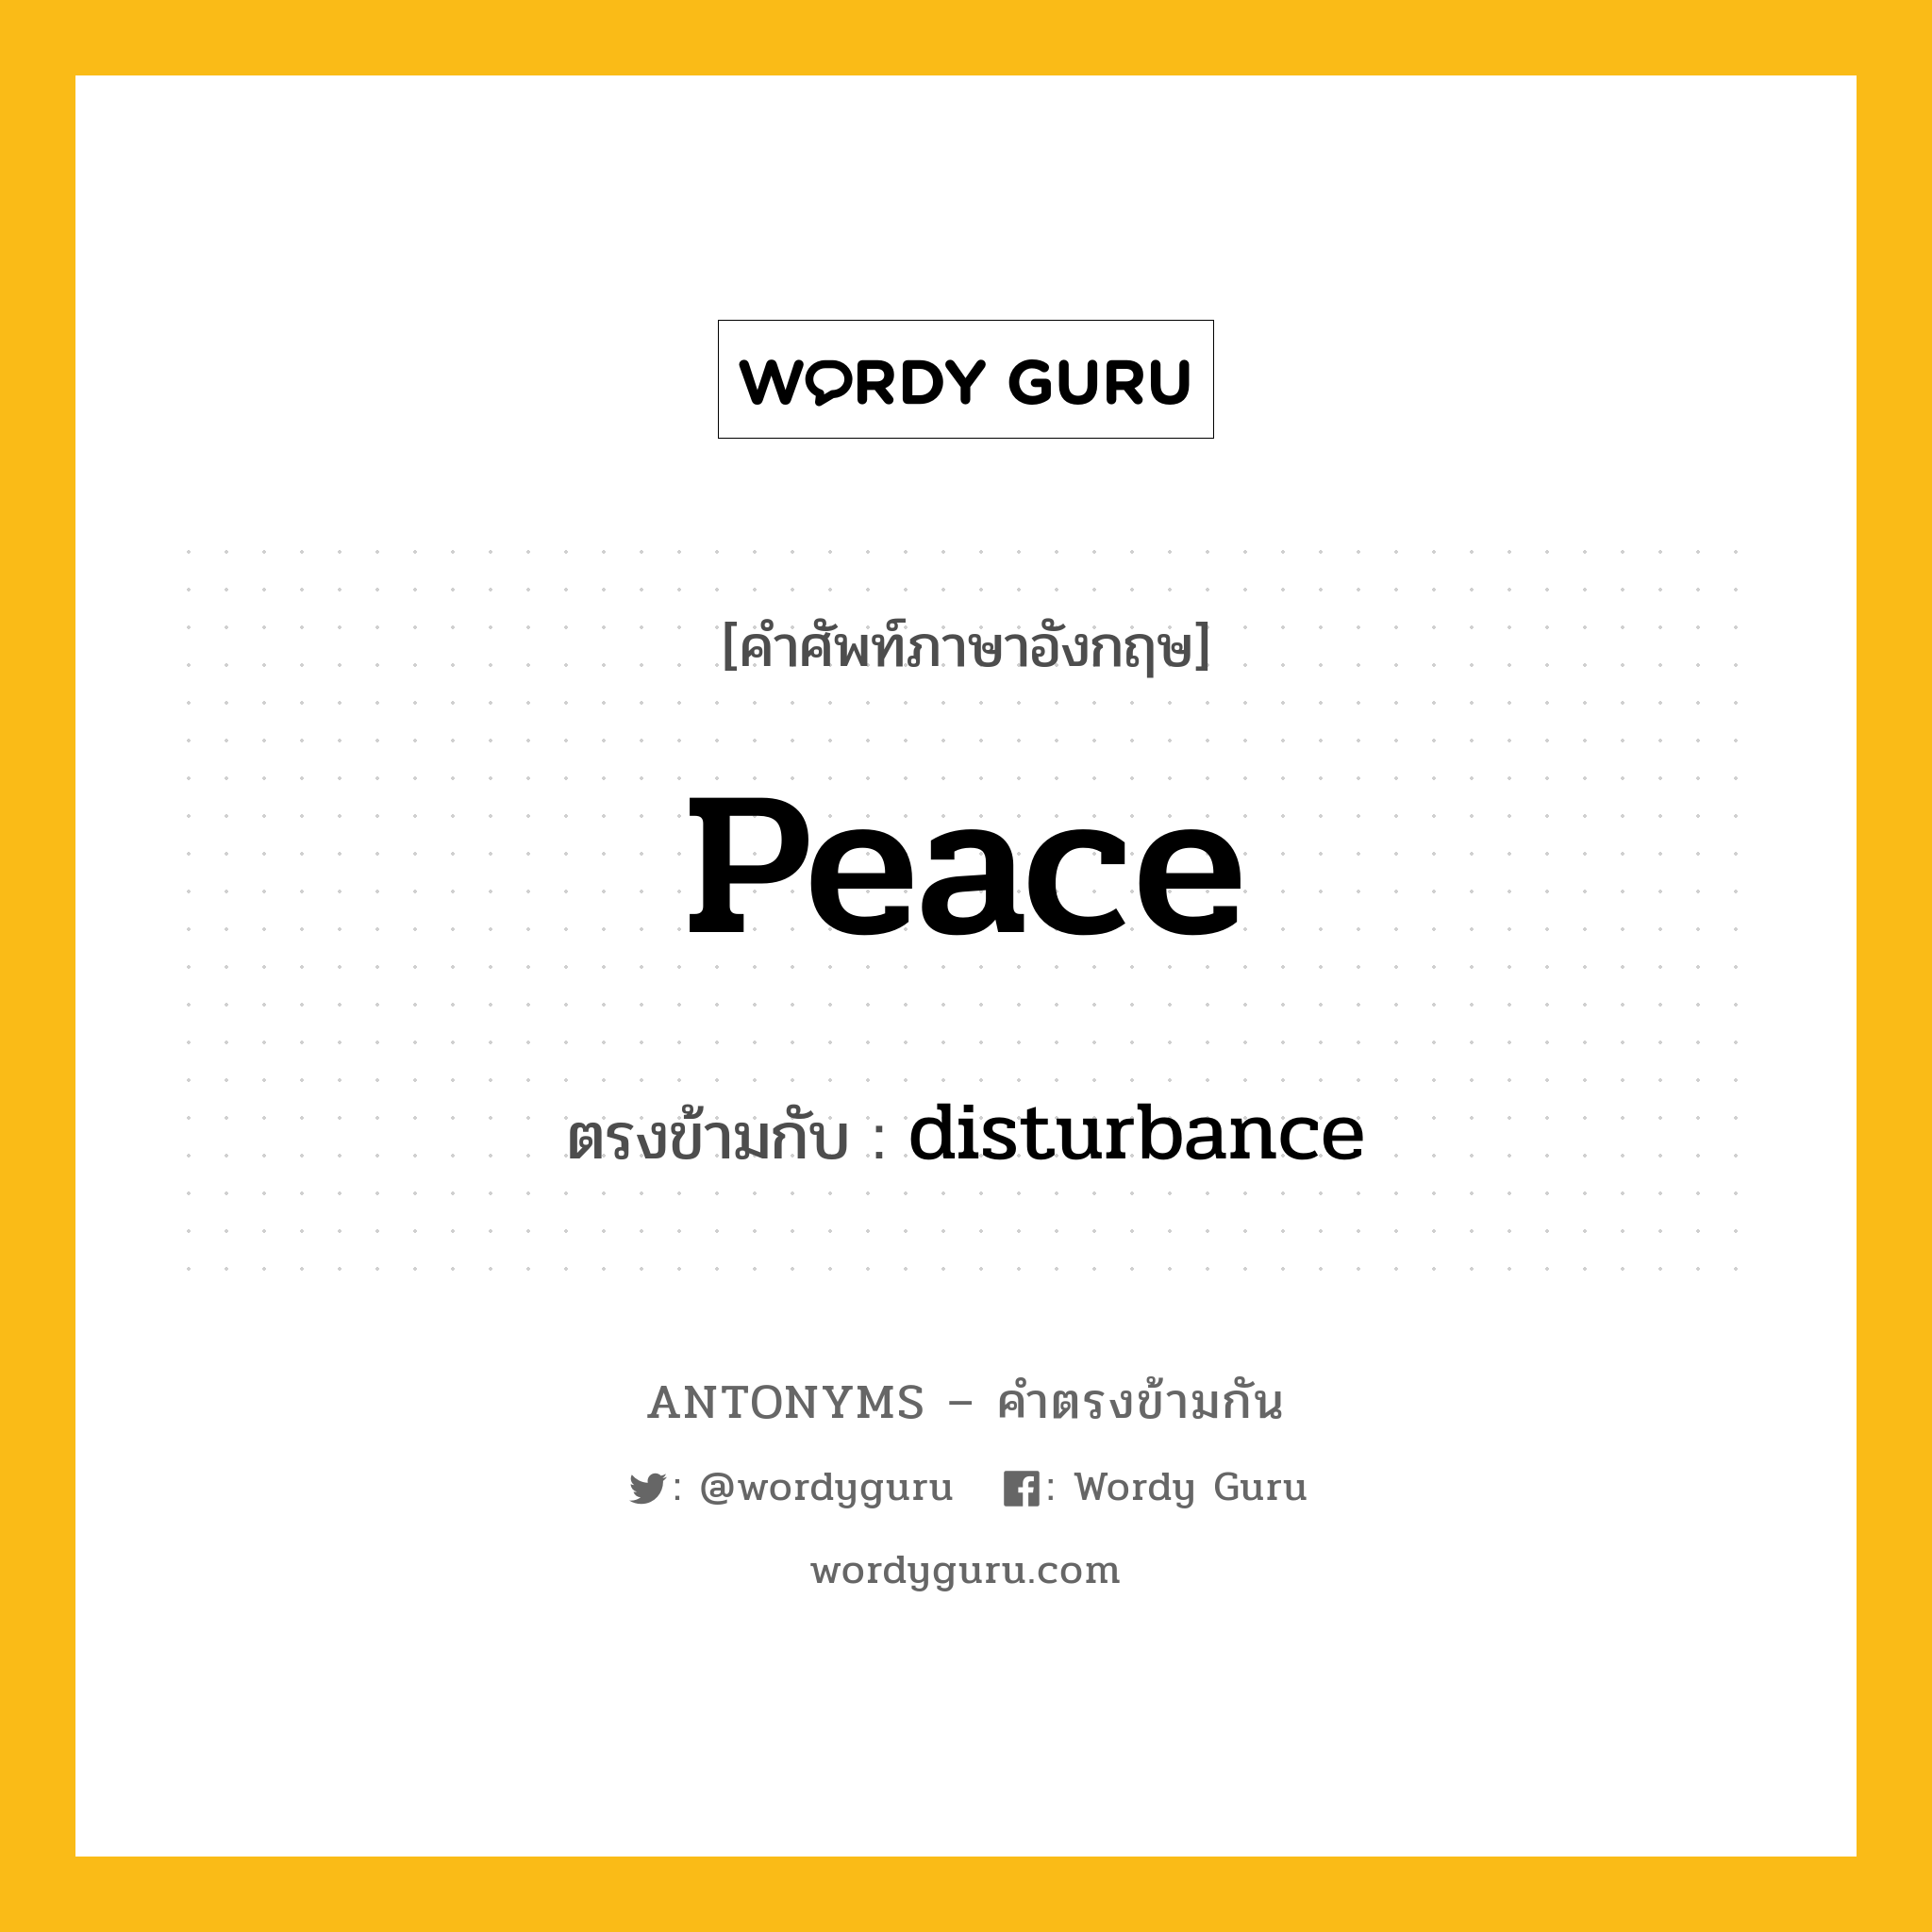 peace เป็นคำตรงข้ามกับคำไหนบ้าง?, คำศัพท์ภาษาอังกฤษ peace ตรงข้ามกับ disturbance หมวด disturbance